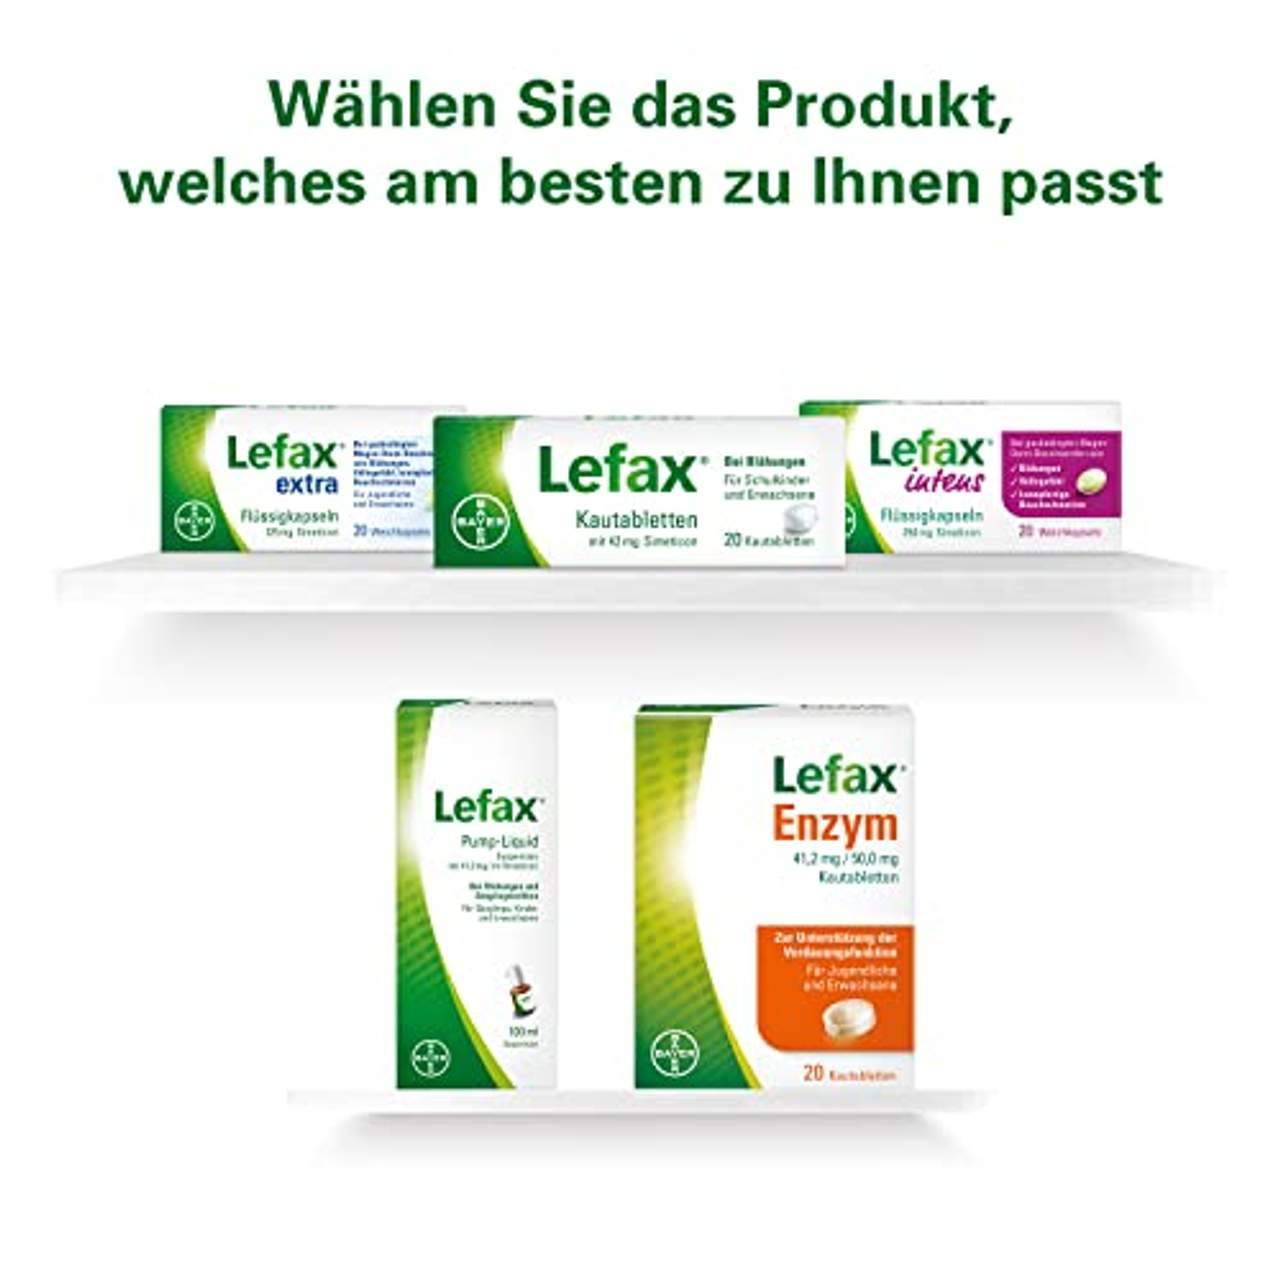 Lefax Intens Flüssigkapseln bei stärkeren Blähungen und weiteren